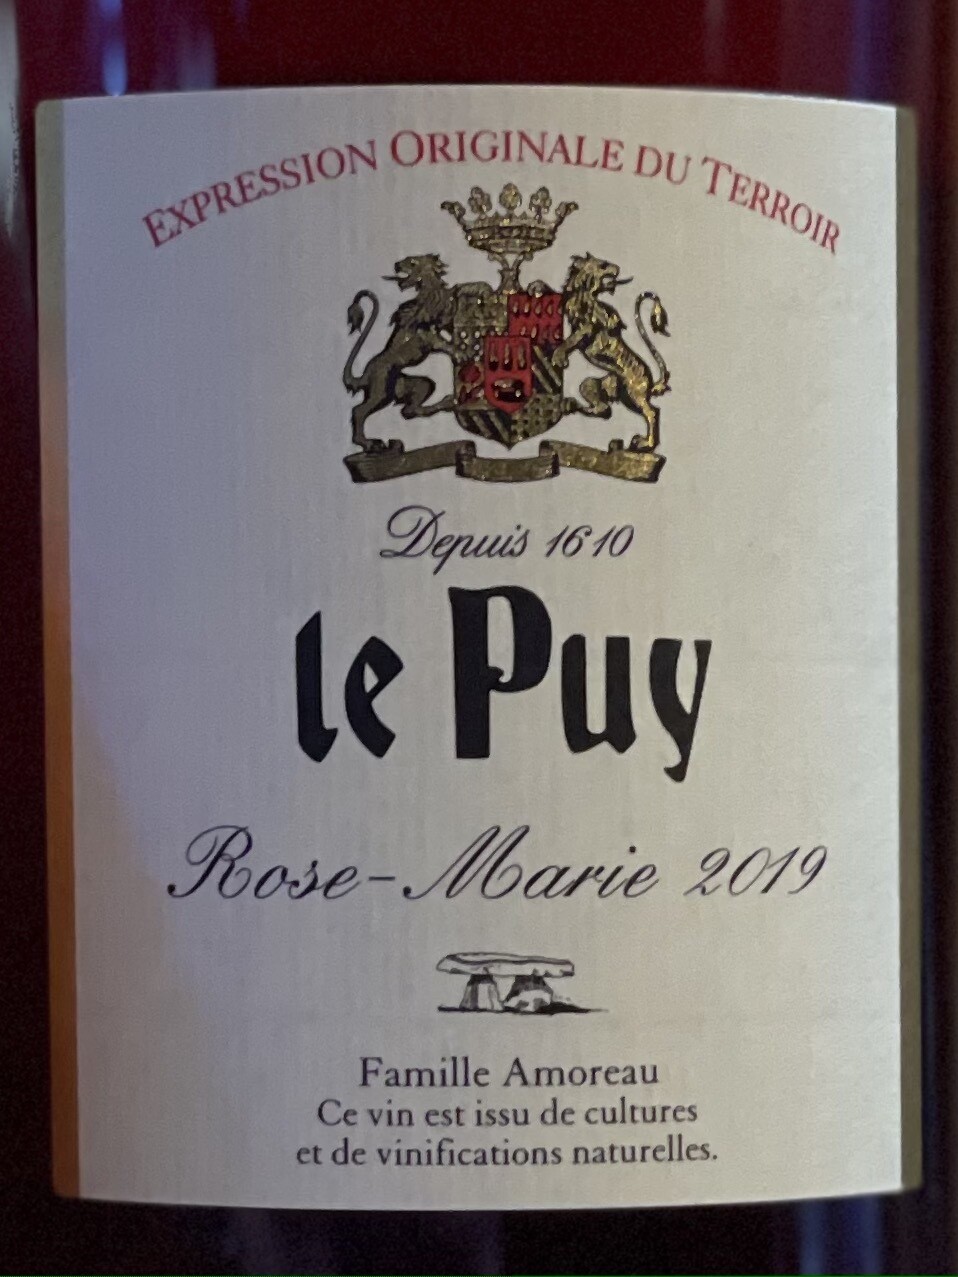 Chateau Le Puy 2019 “Rose-Marie”